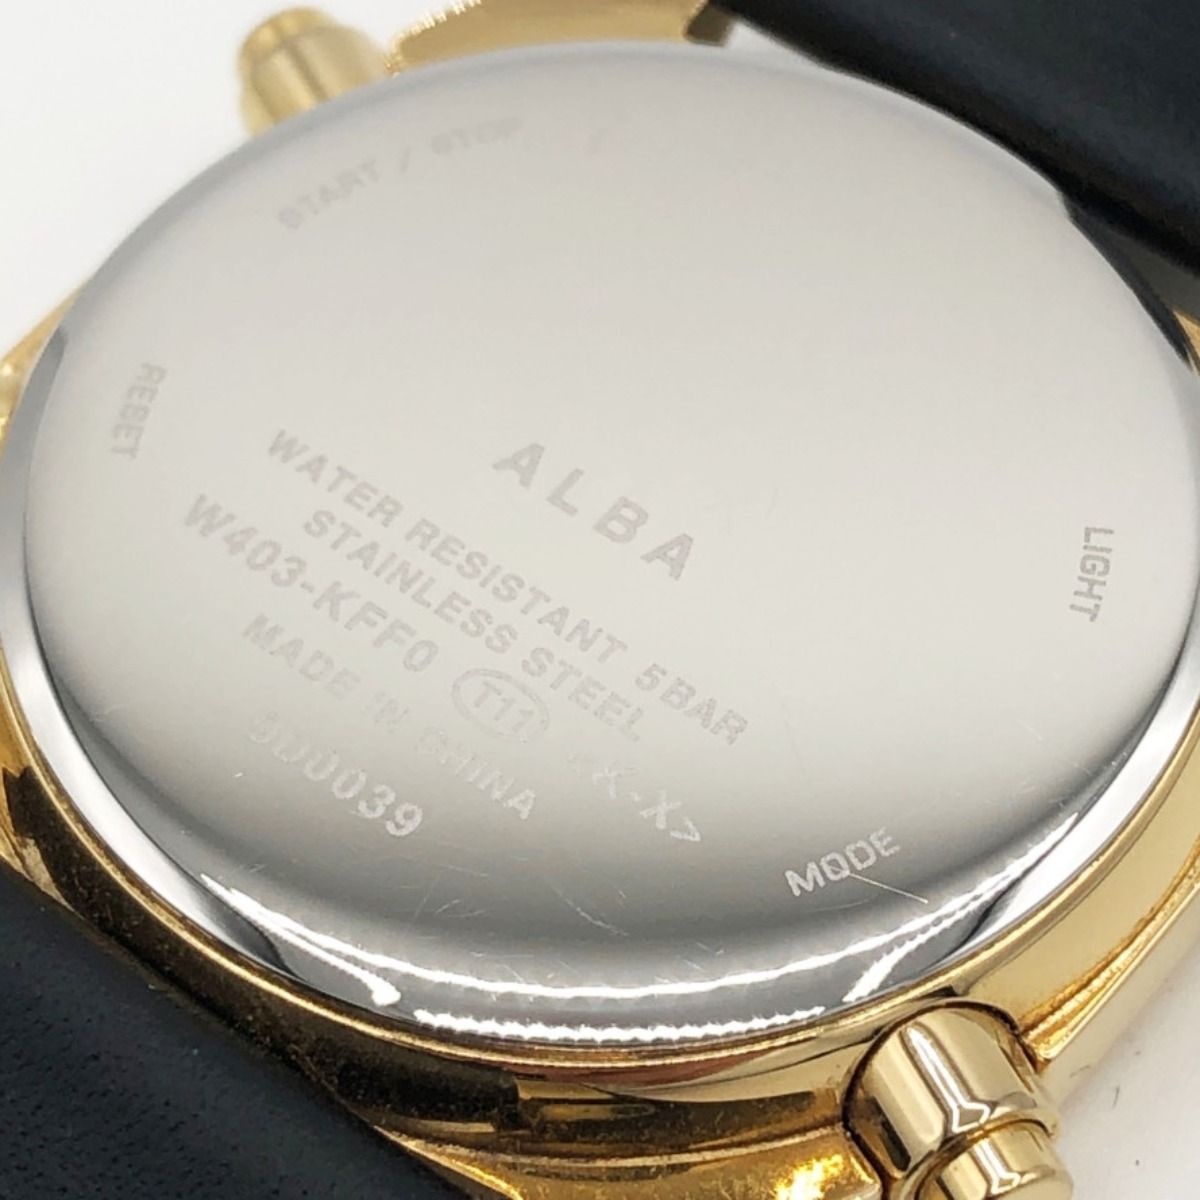 〇〇ALBA アルバ Fusion 腕時計 AFSM403 ブラック x ゴールド - メルカリ